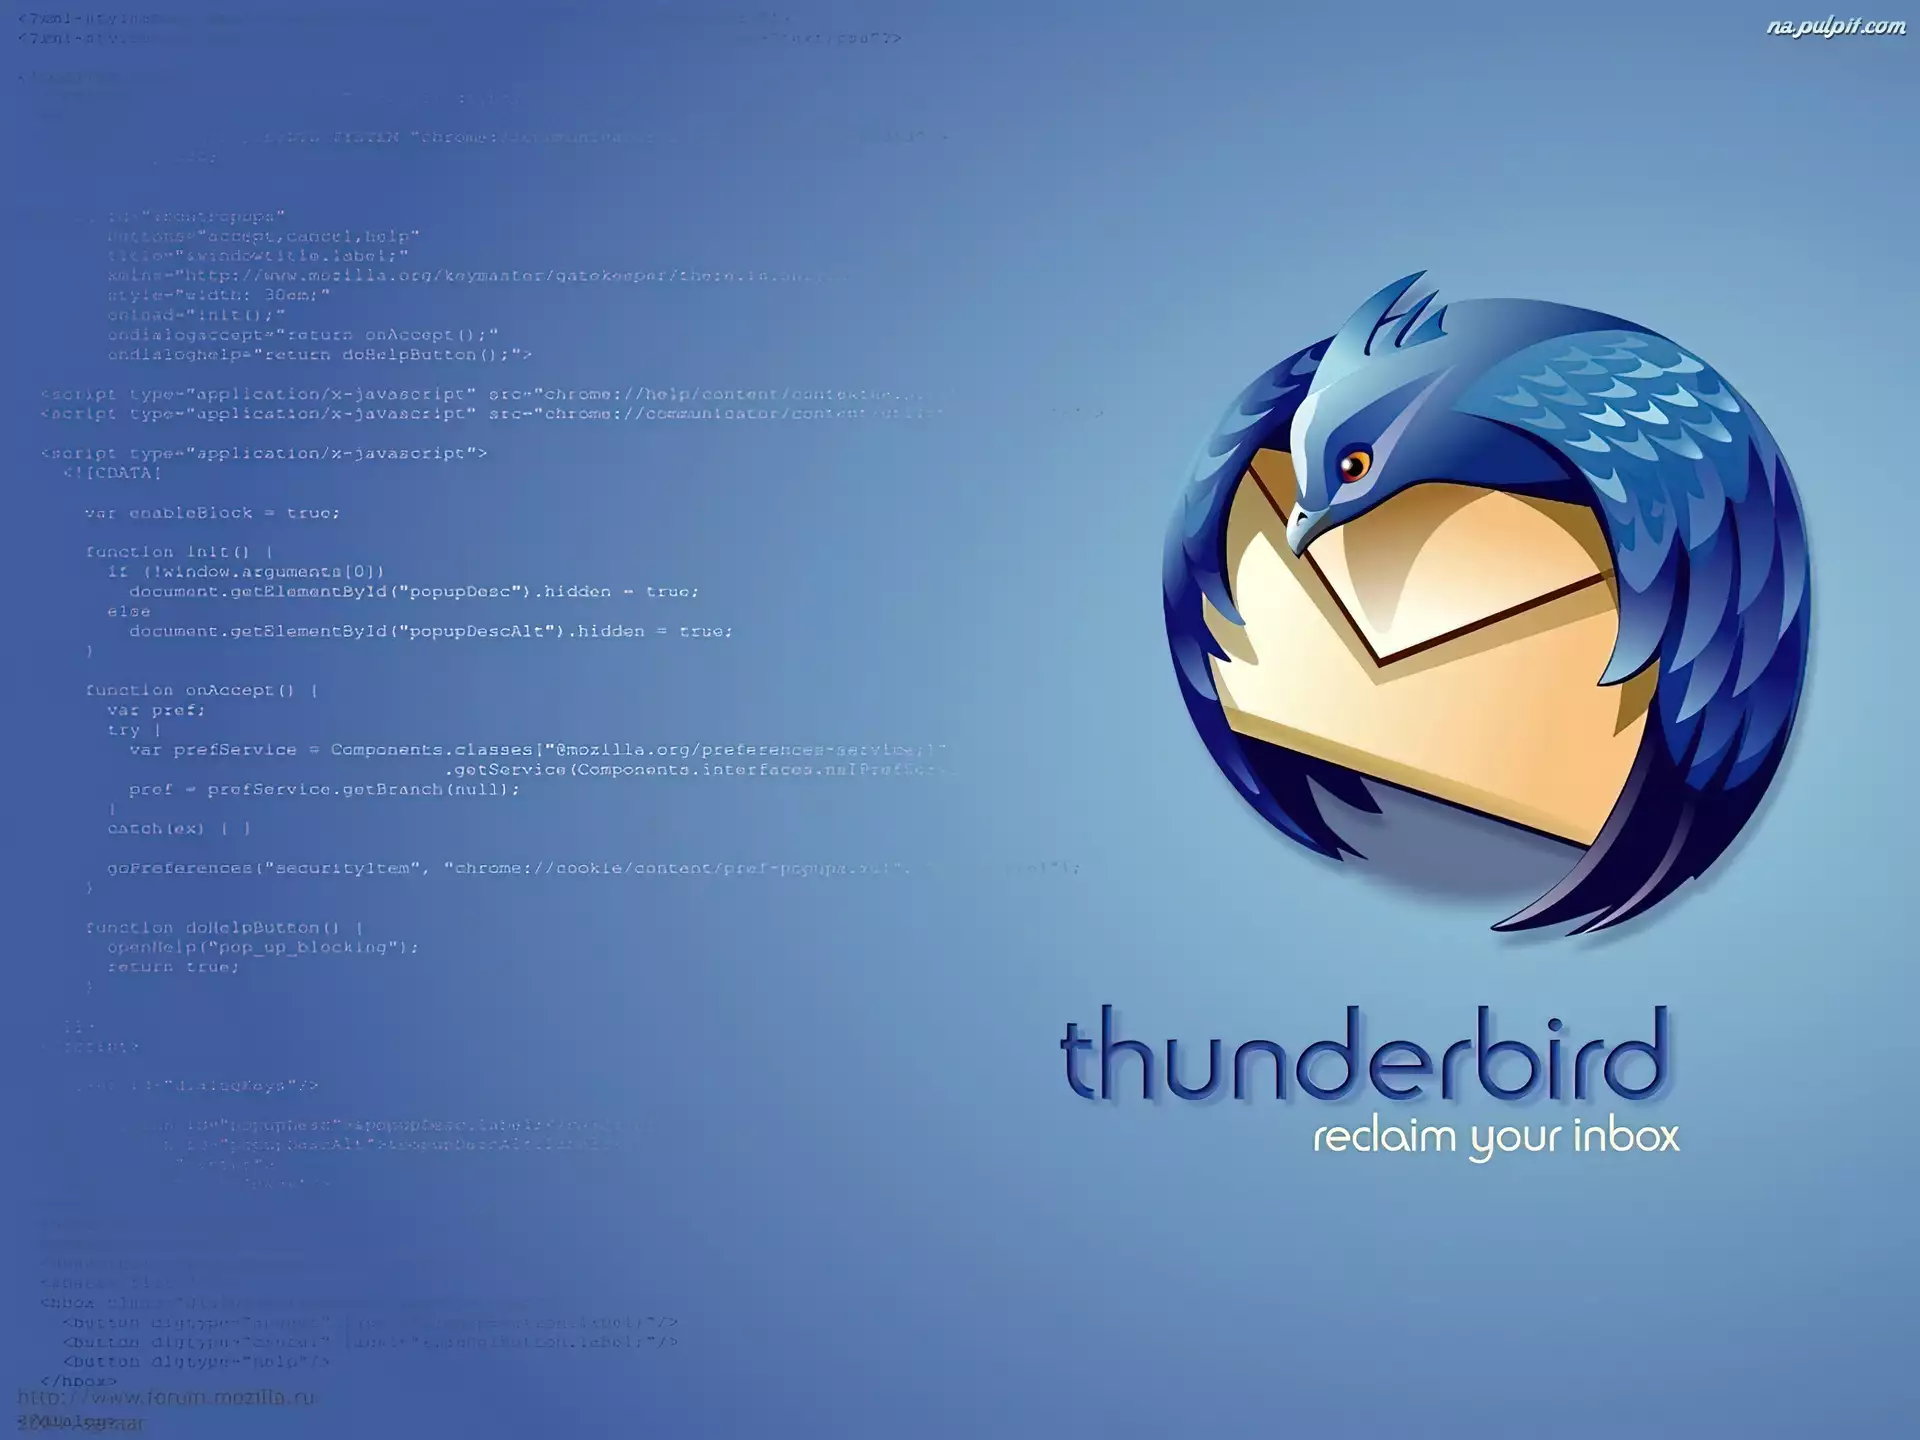 koperta, Thunderbird, ptak